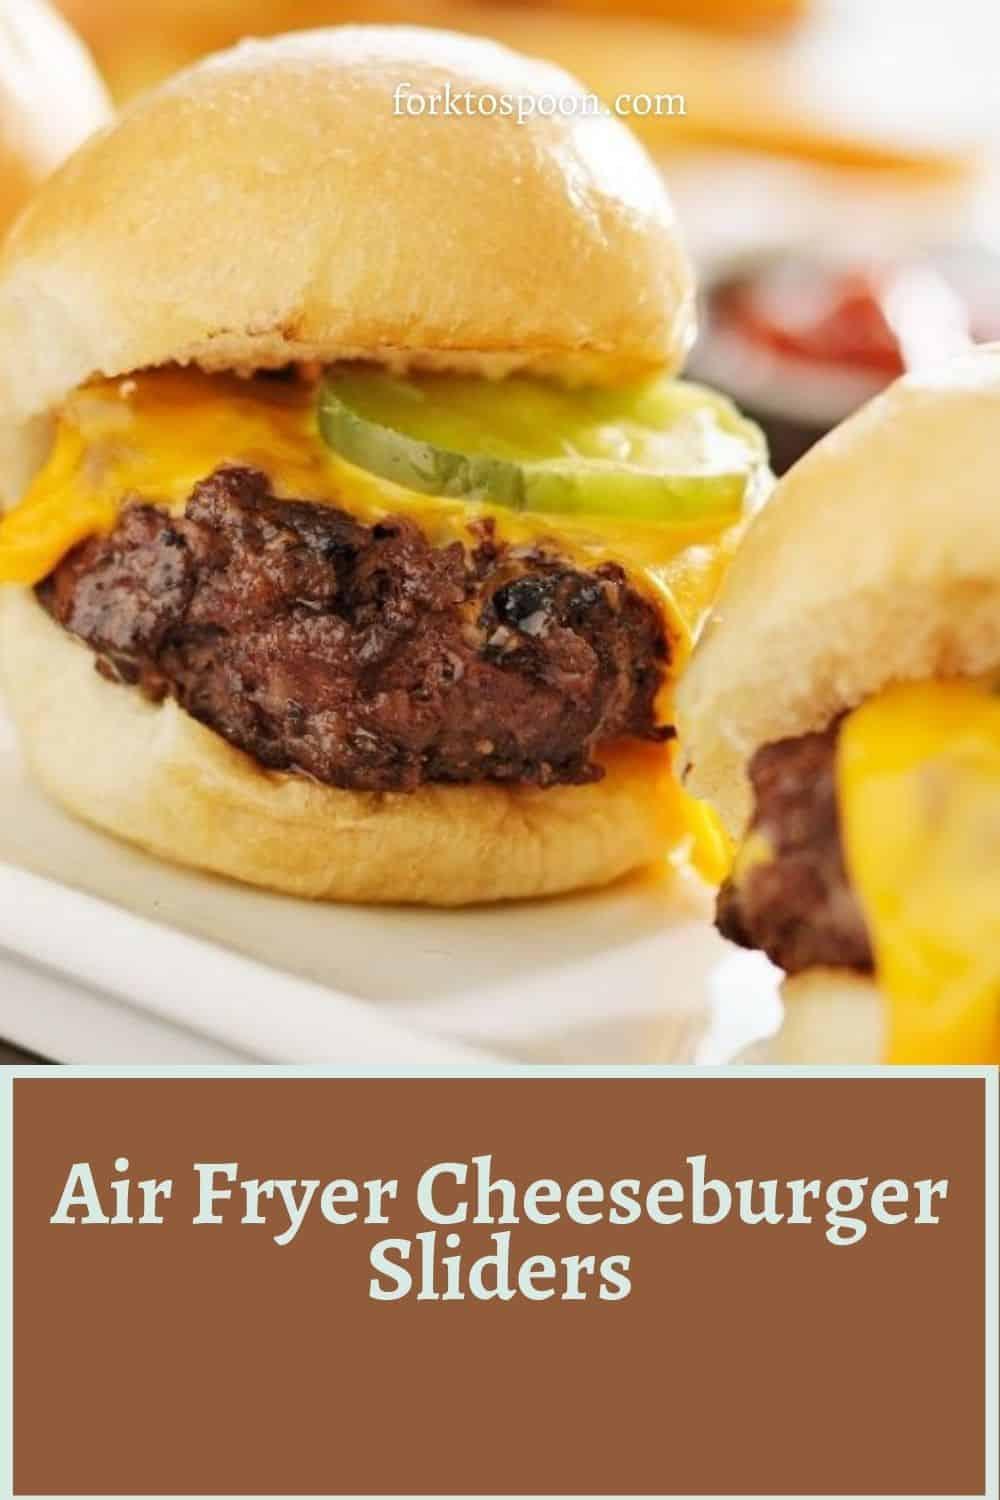 Air Fryer Cheeseburger Sliders